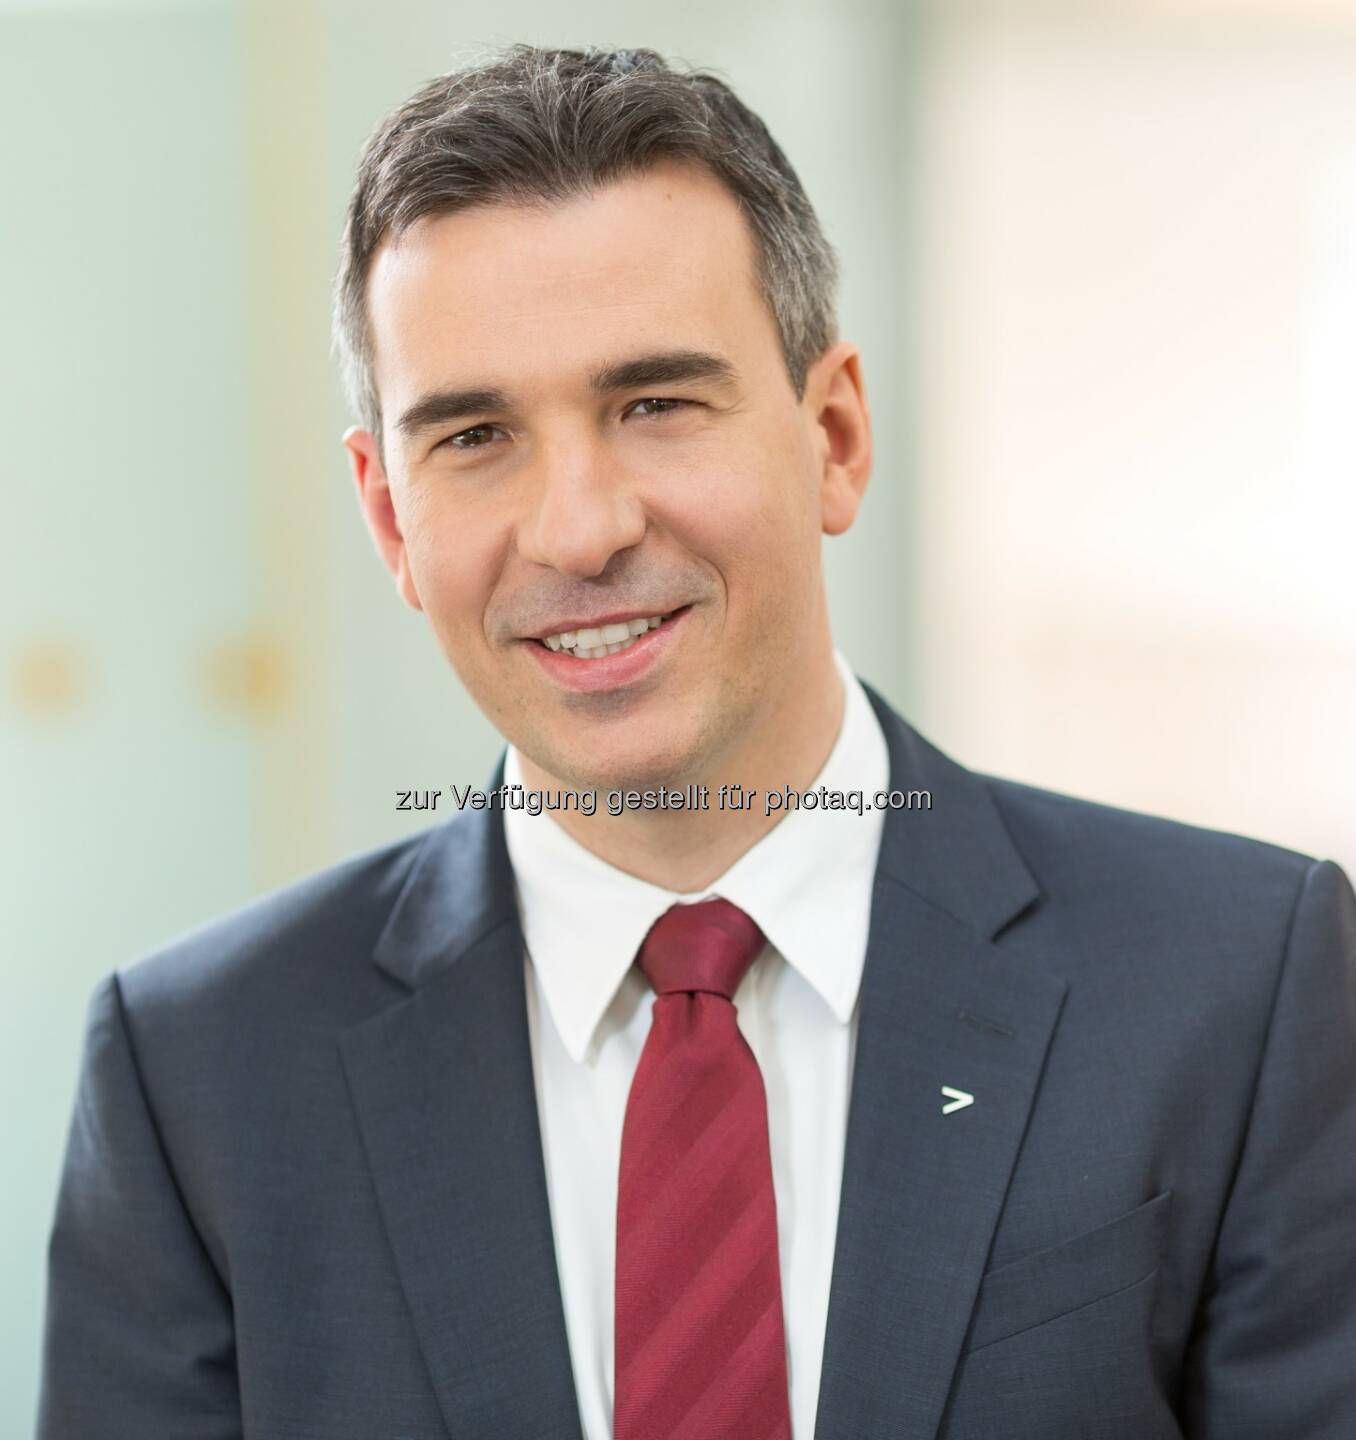 Michael Zettel ist neuer Country Managing Director bei Accenture Österreich: Fotocredit: Accenture/Draper